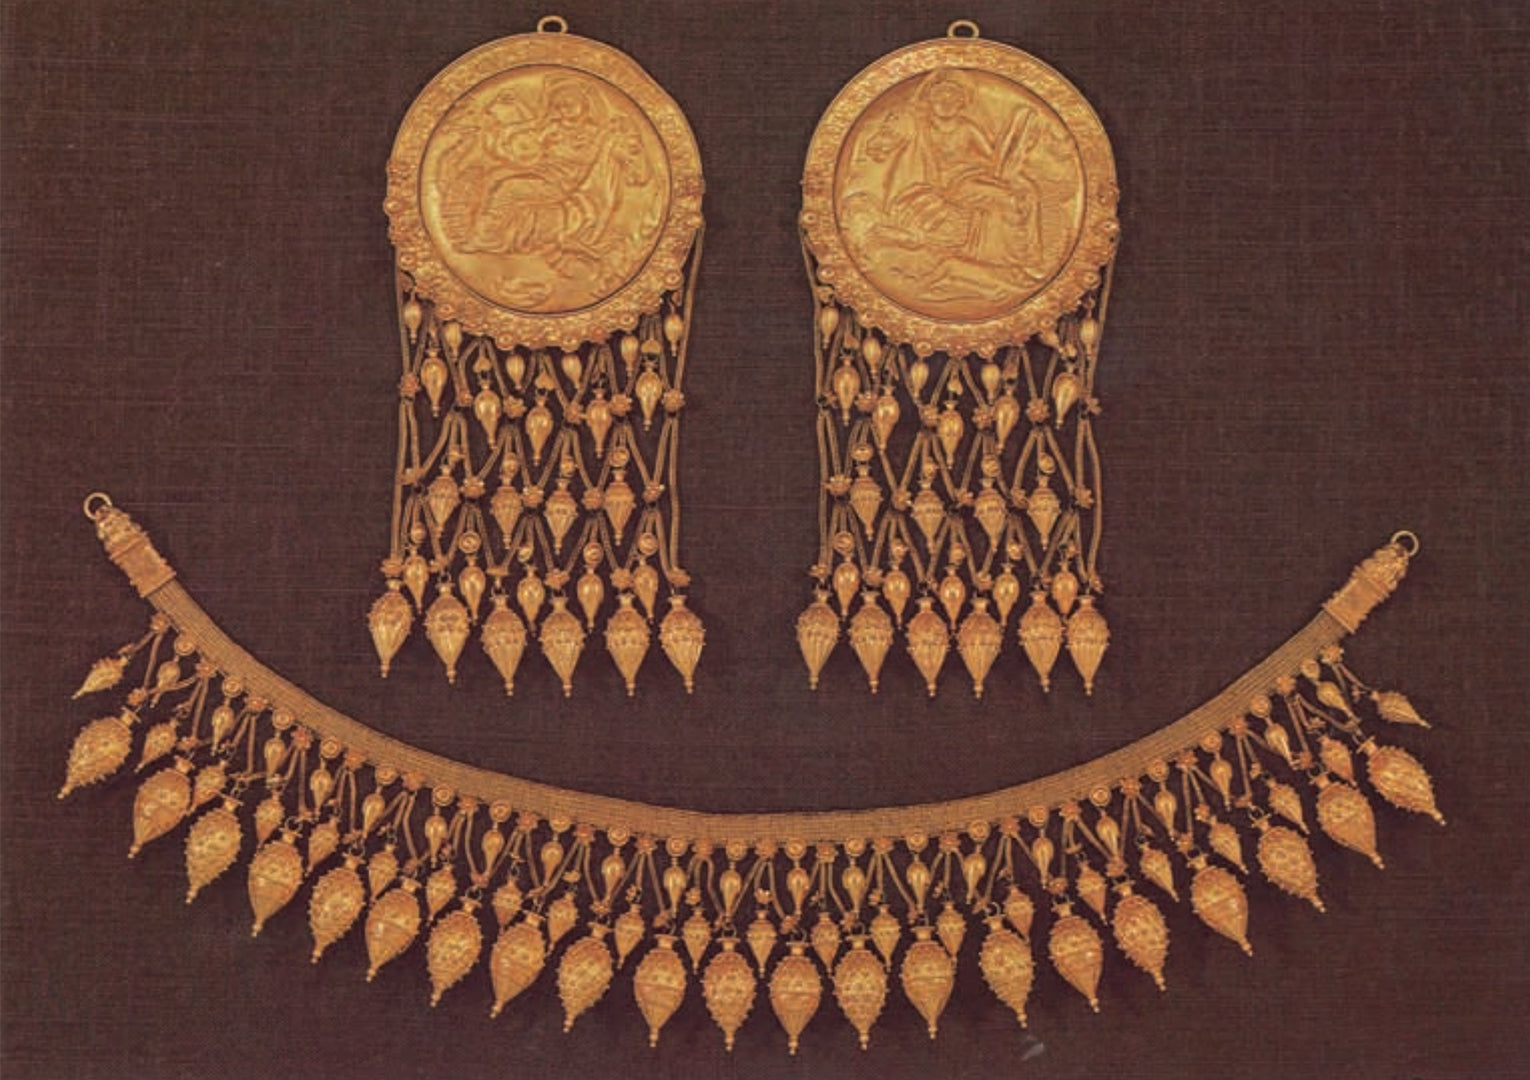 Castellani breast - necklace ornaments